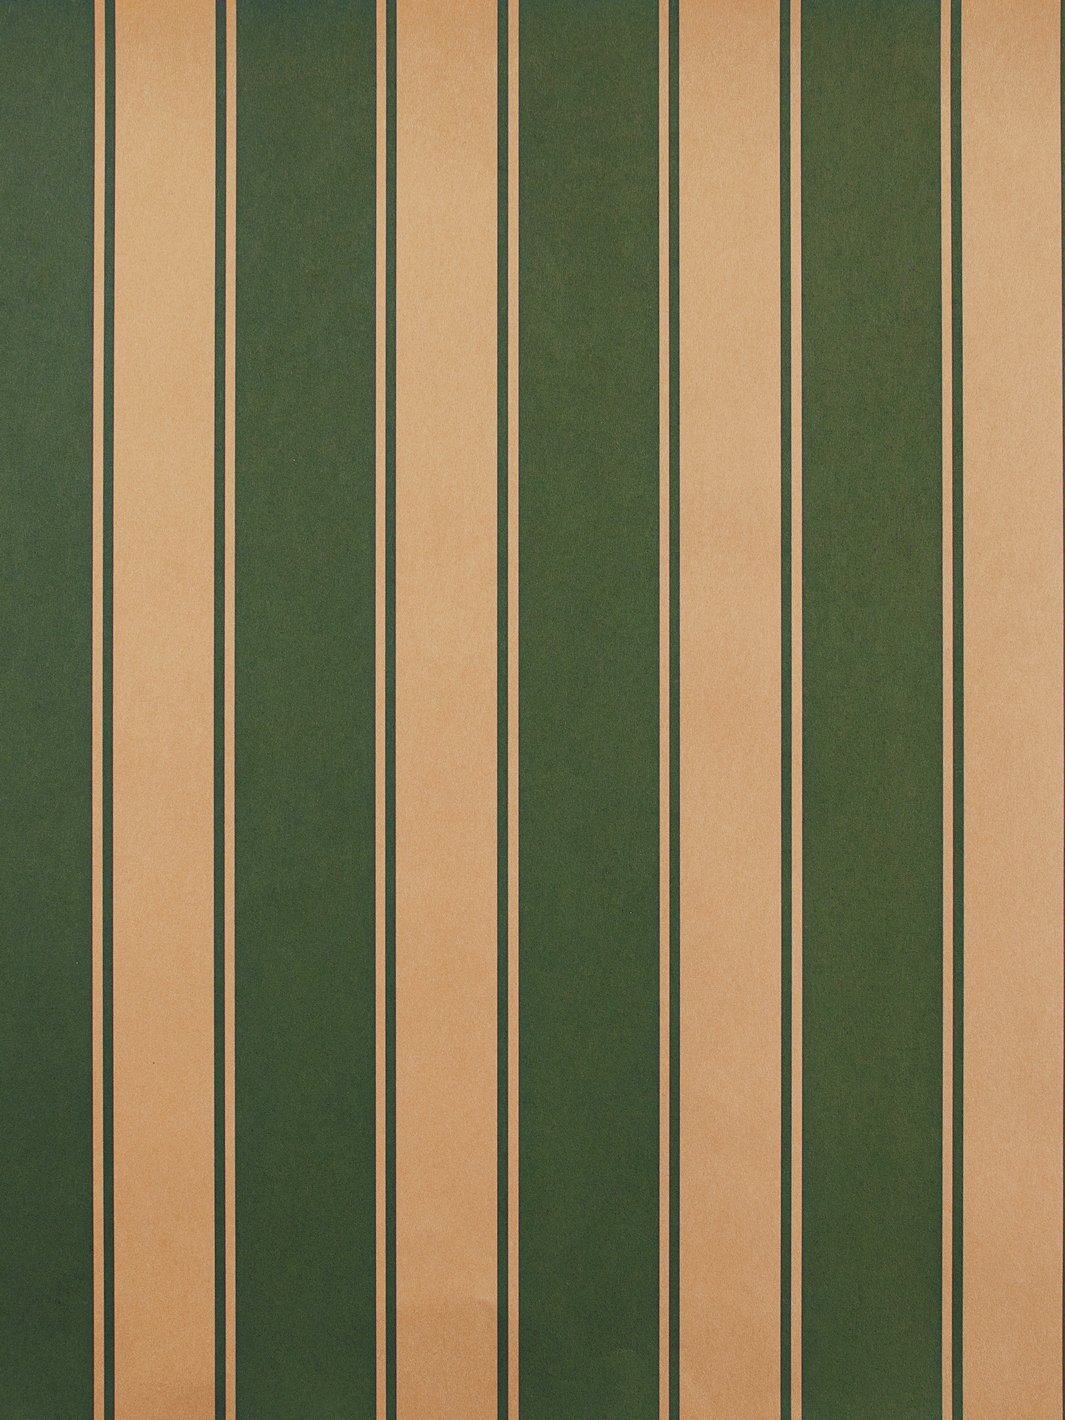 'Ojai Stripe' Kraft' Wallpaper by Wallshoppe - Green